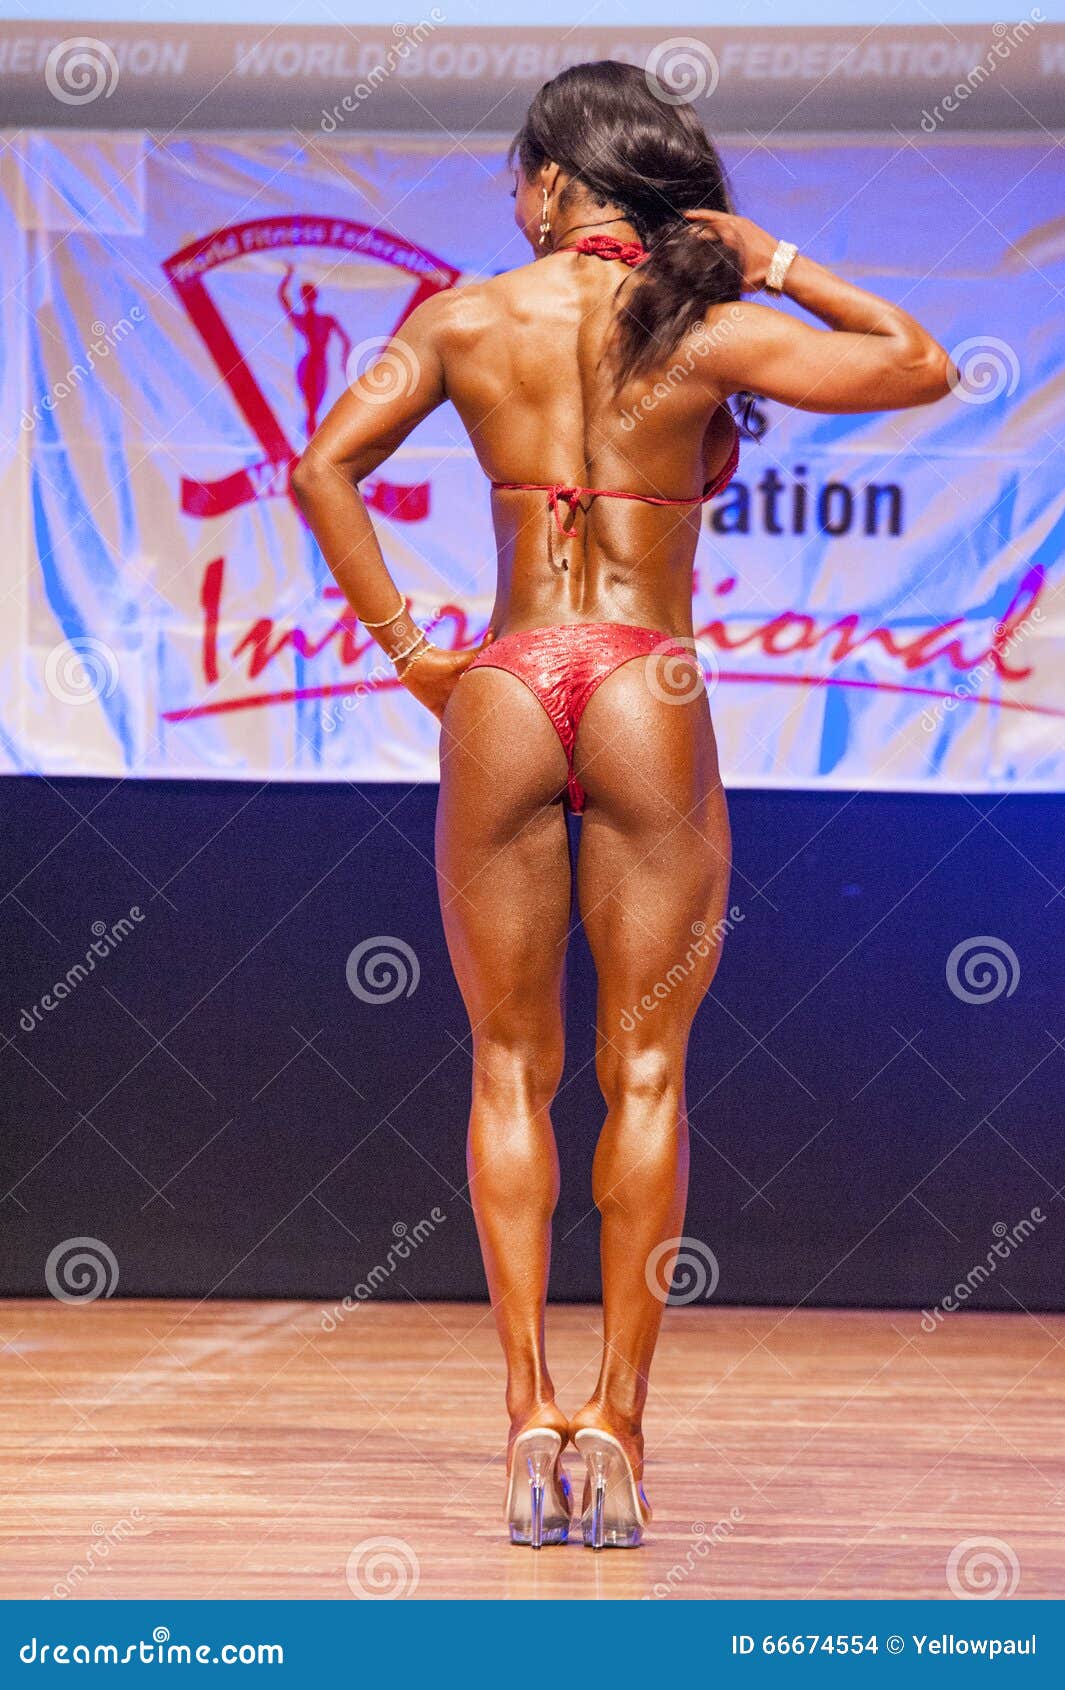 Installation Gør det godt Ren Female Figure Model Shows Her Best at Championship on Stage Editorial Stock  Image - Image of active, bodybuilder: 66674554